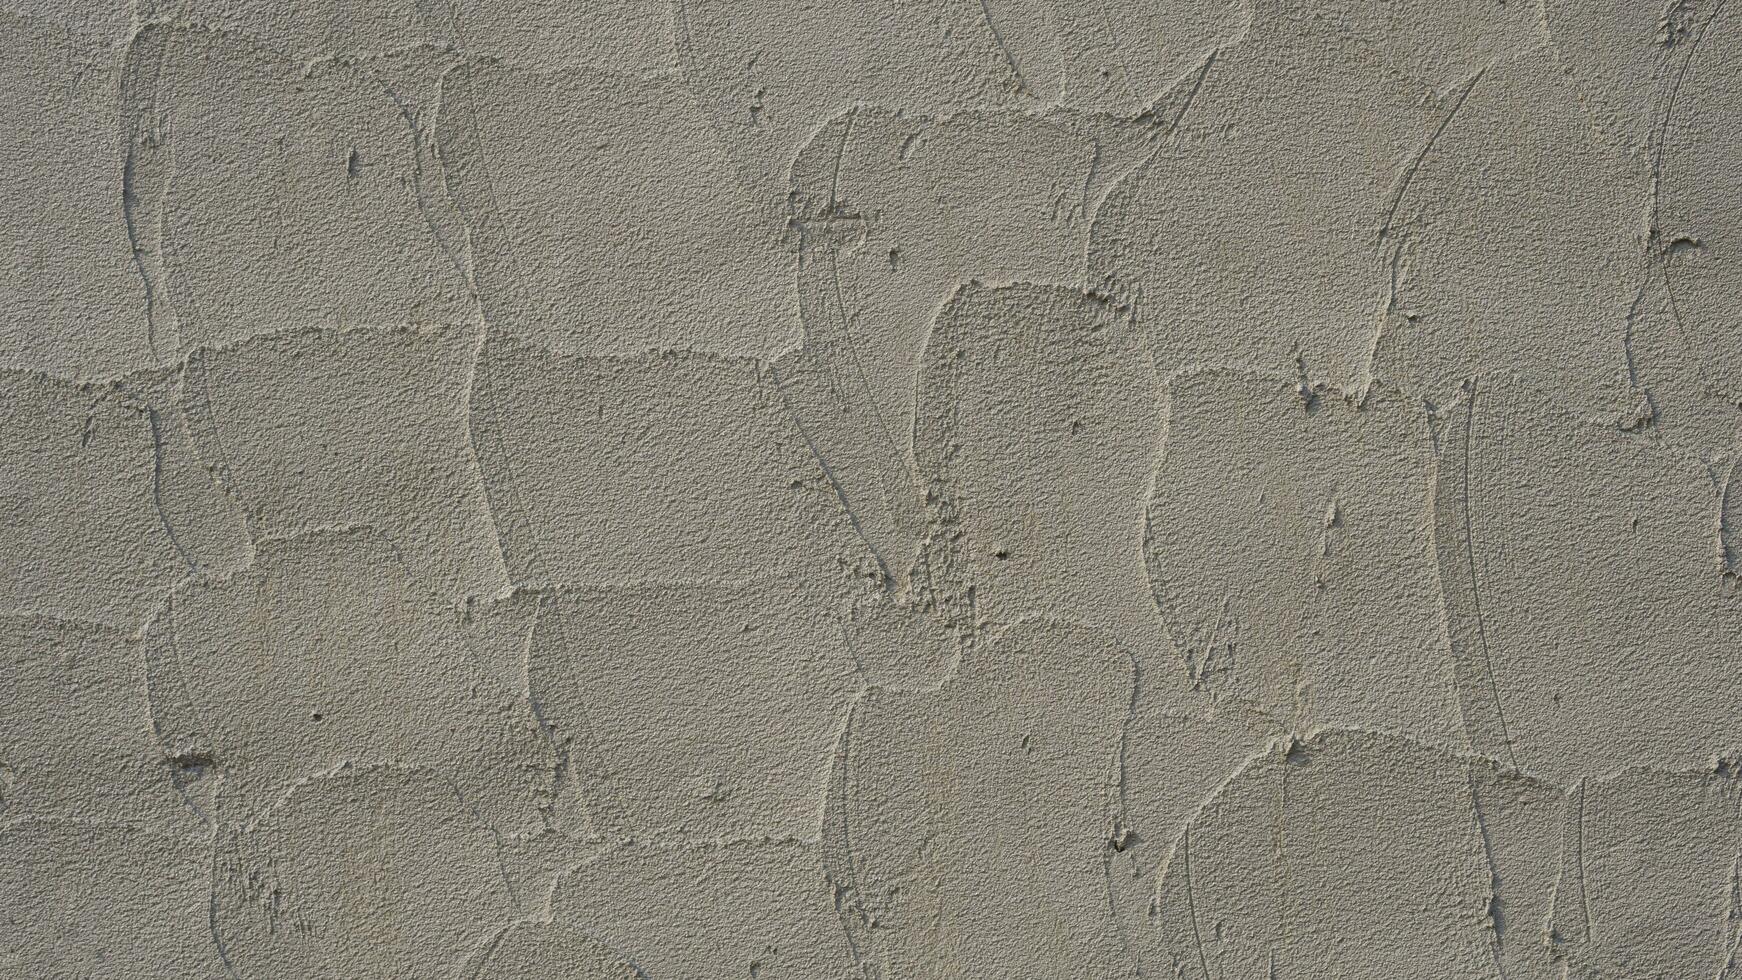 Hintergrund von Beton Mauer Textur und Detail Rau Korn von Kelle Verputzen auf Oberfläche foto